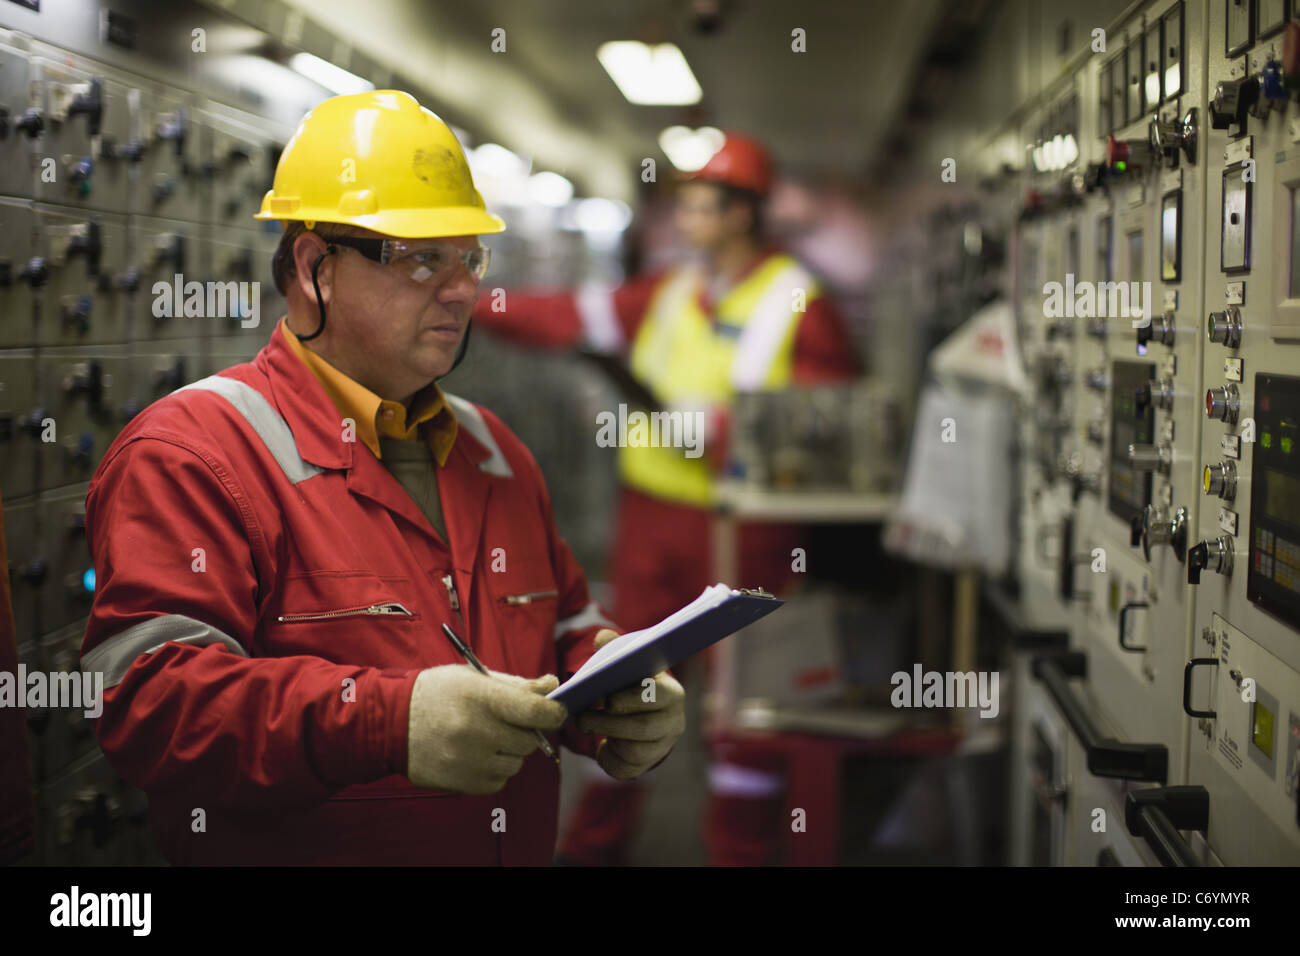 Worker checking machinery Stock Photo